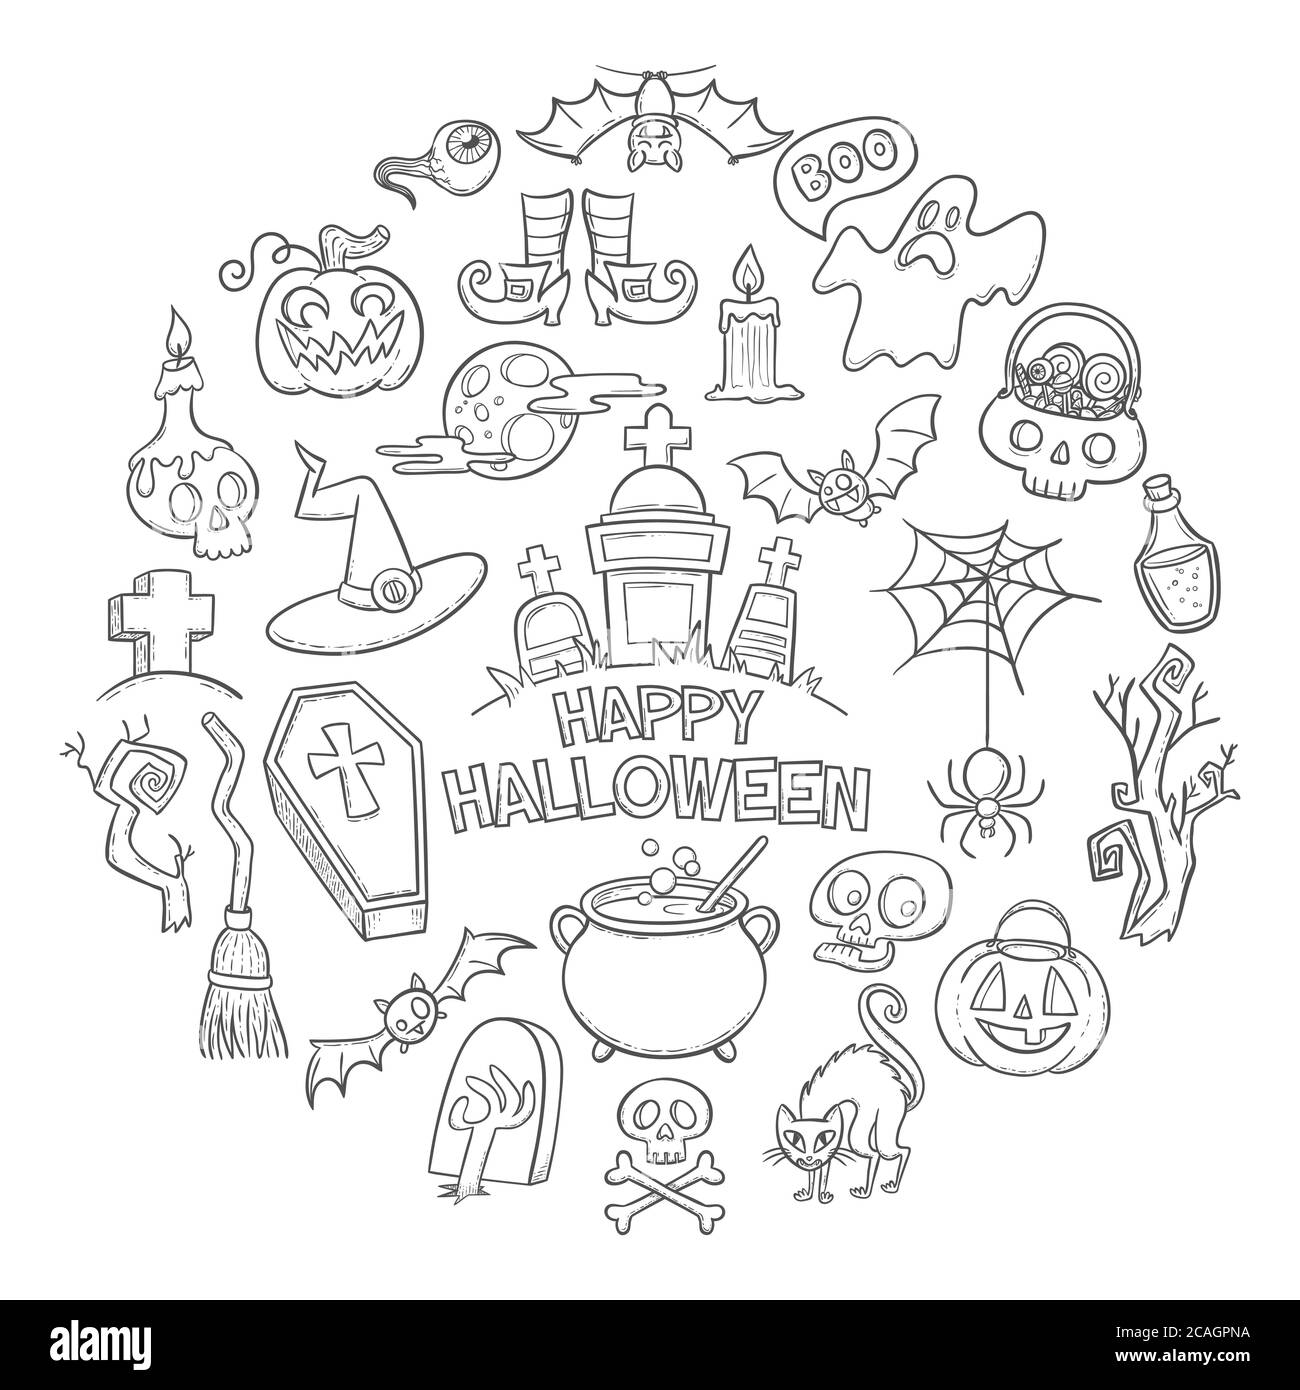 Collection Halloween Doodle Elements. Arrière-plan mignon avec des éléments de caniche dessinés à la main de la fête d'Halloween. Illustration vectorielle isolée sur blanc Illustration de Vecteur